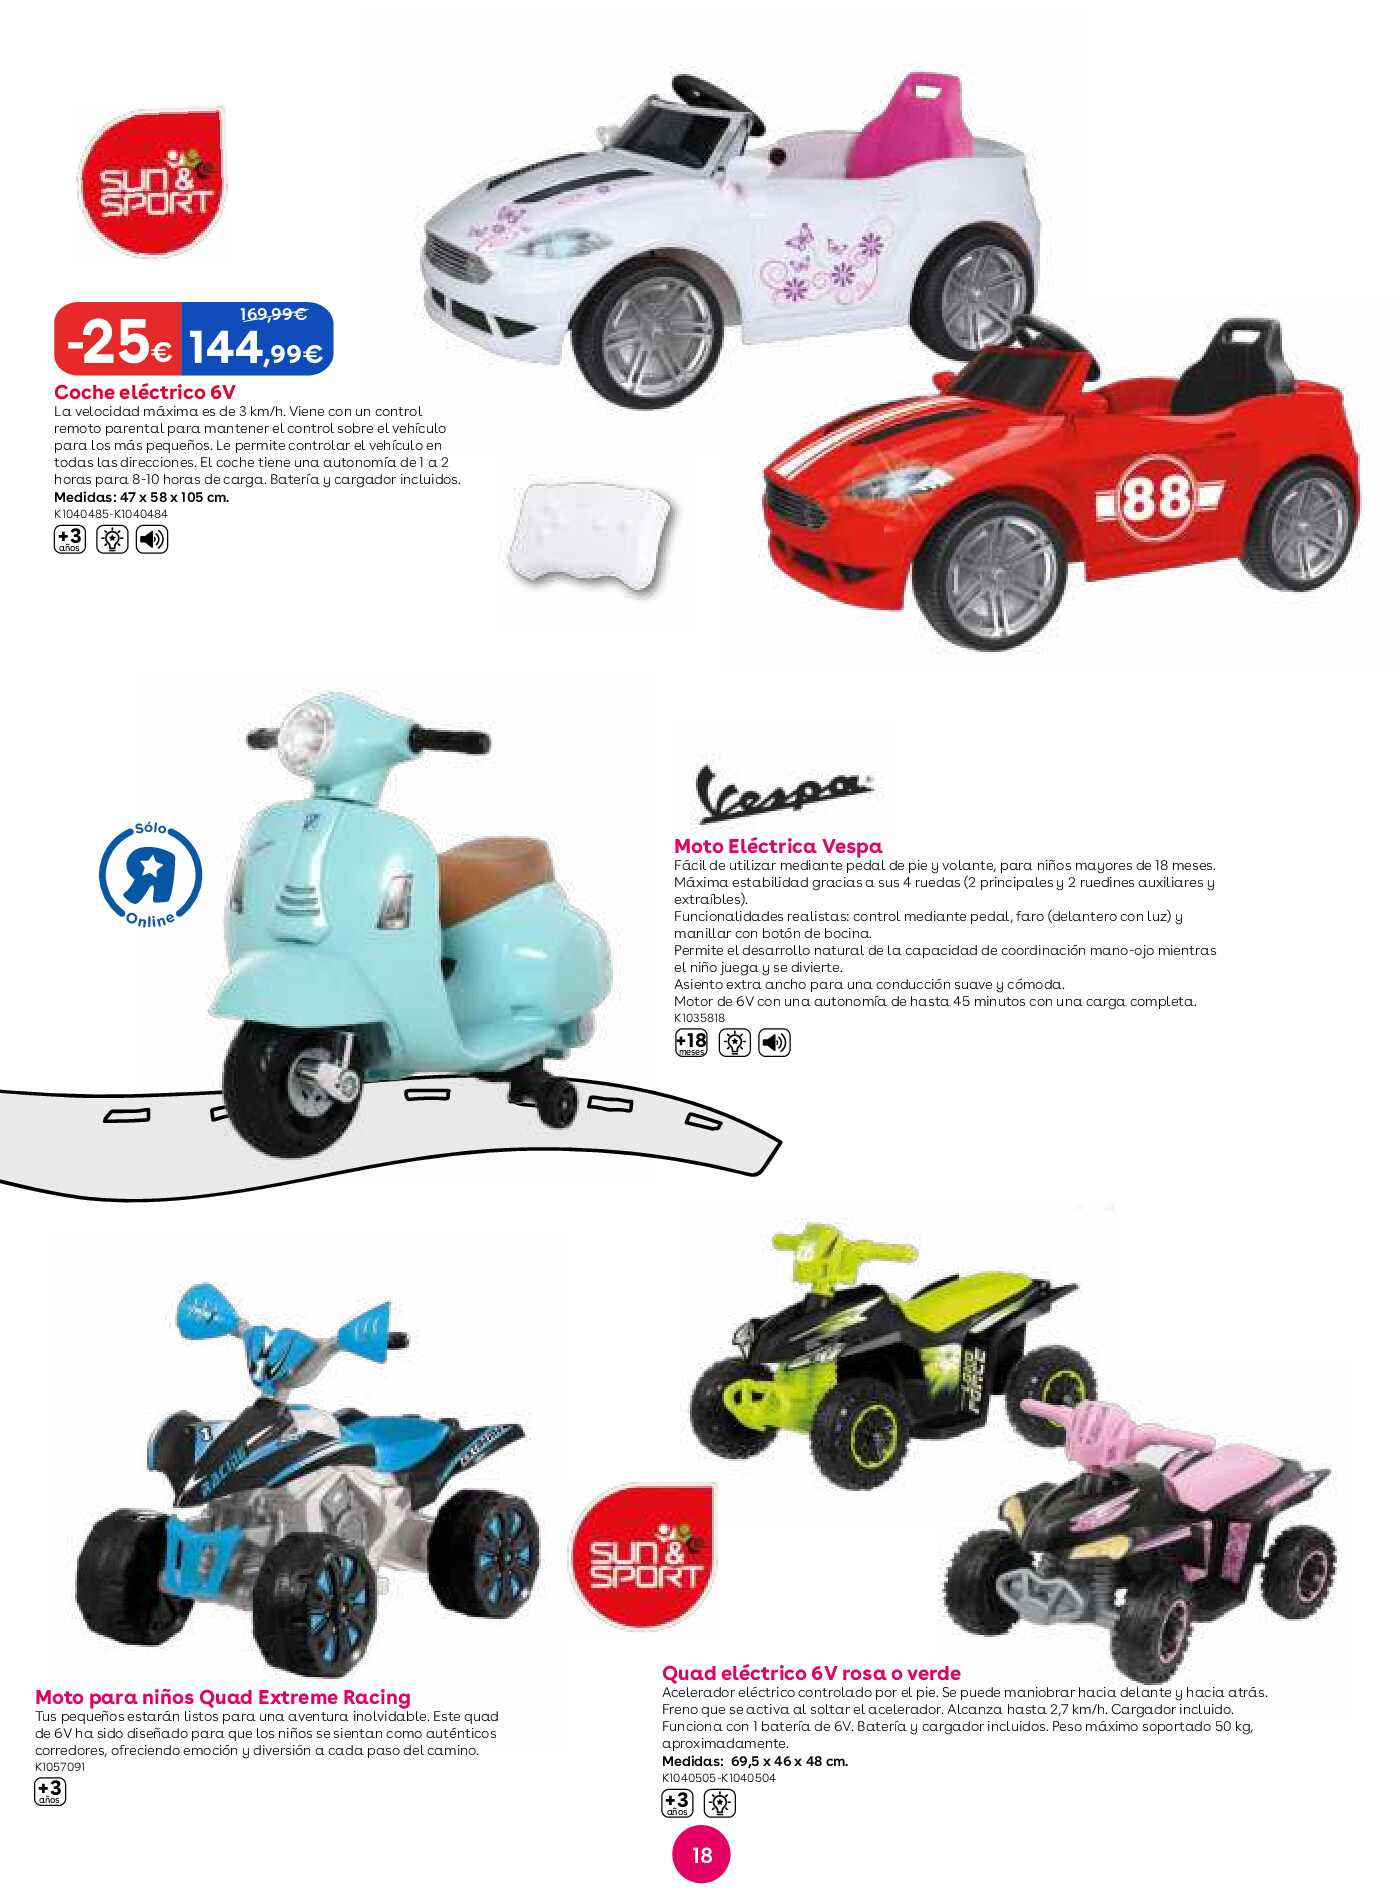 Mes de las ruedas Toys R Us. Página 18